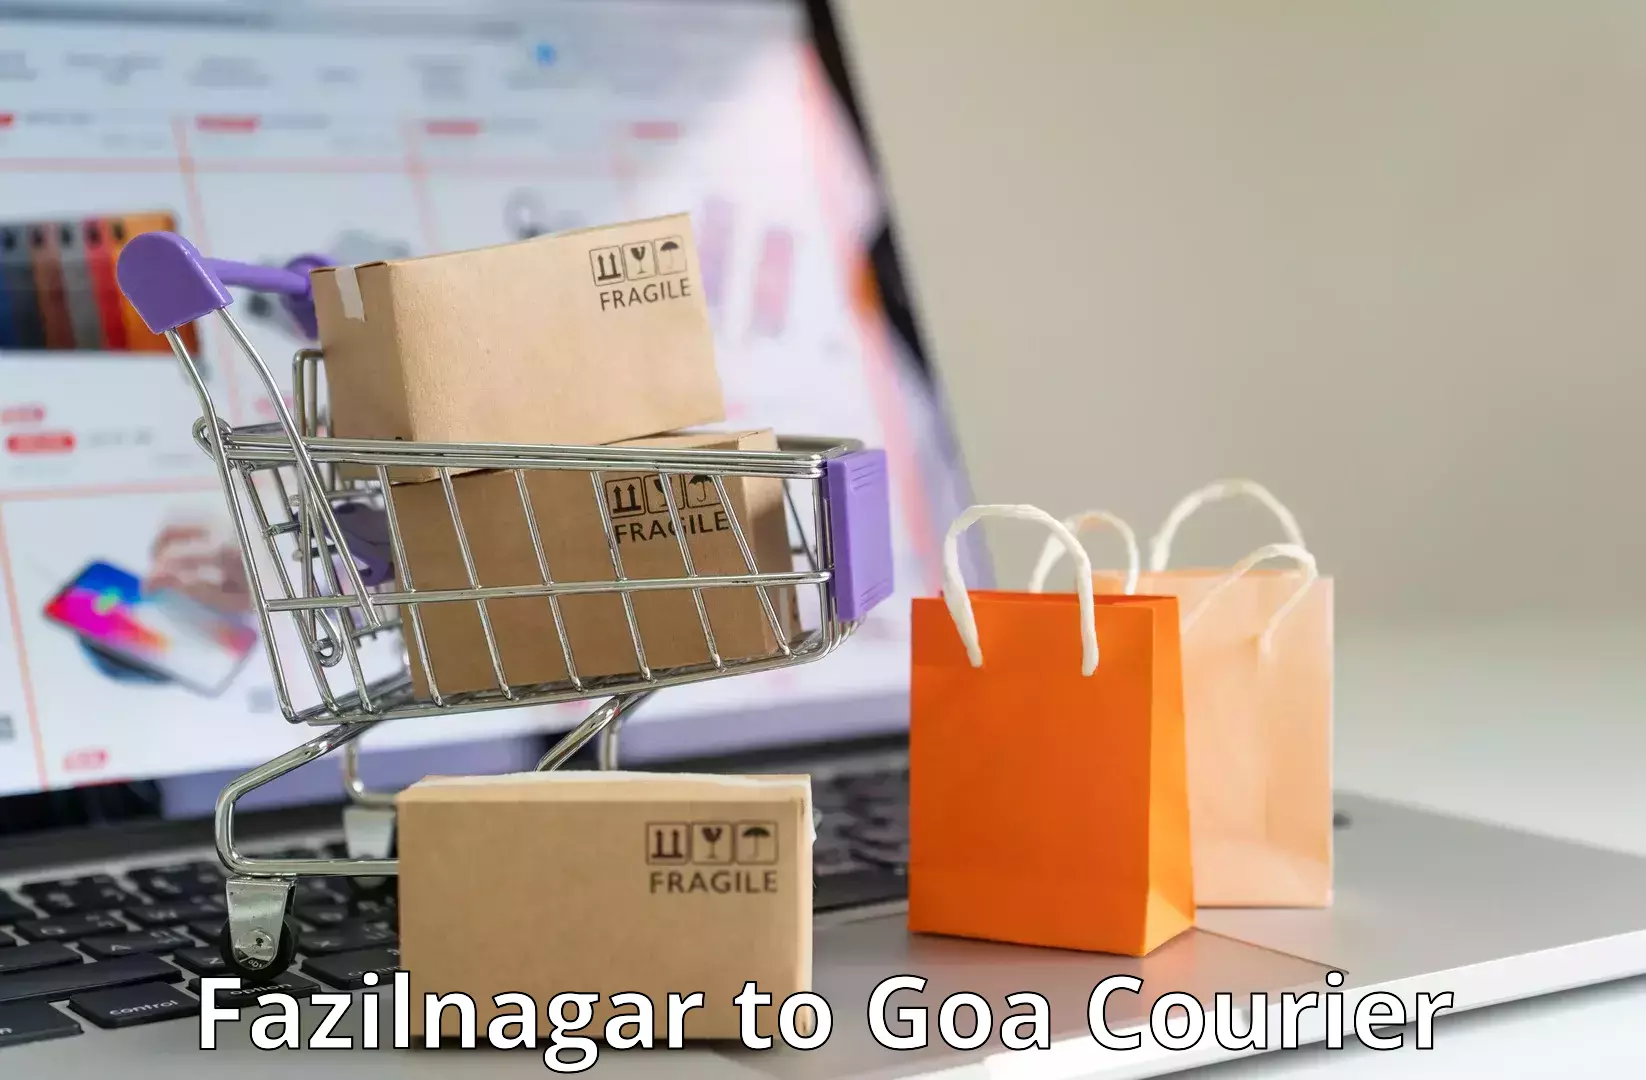 High-quality delivery services Fazilnagar to South Goa